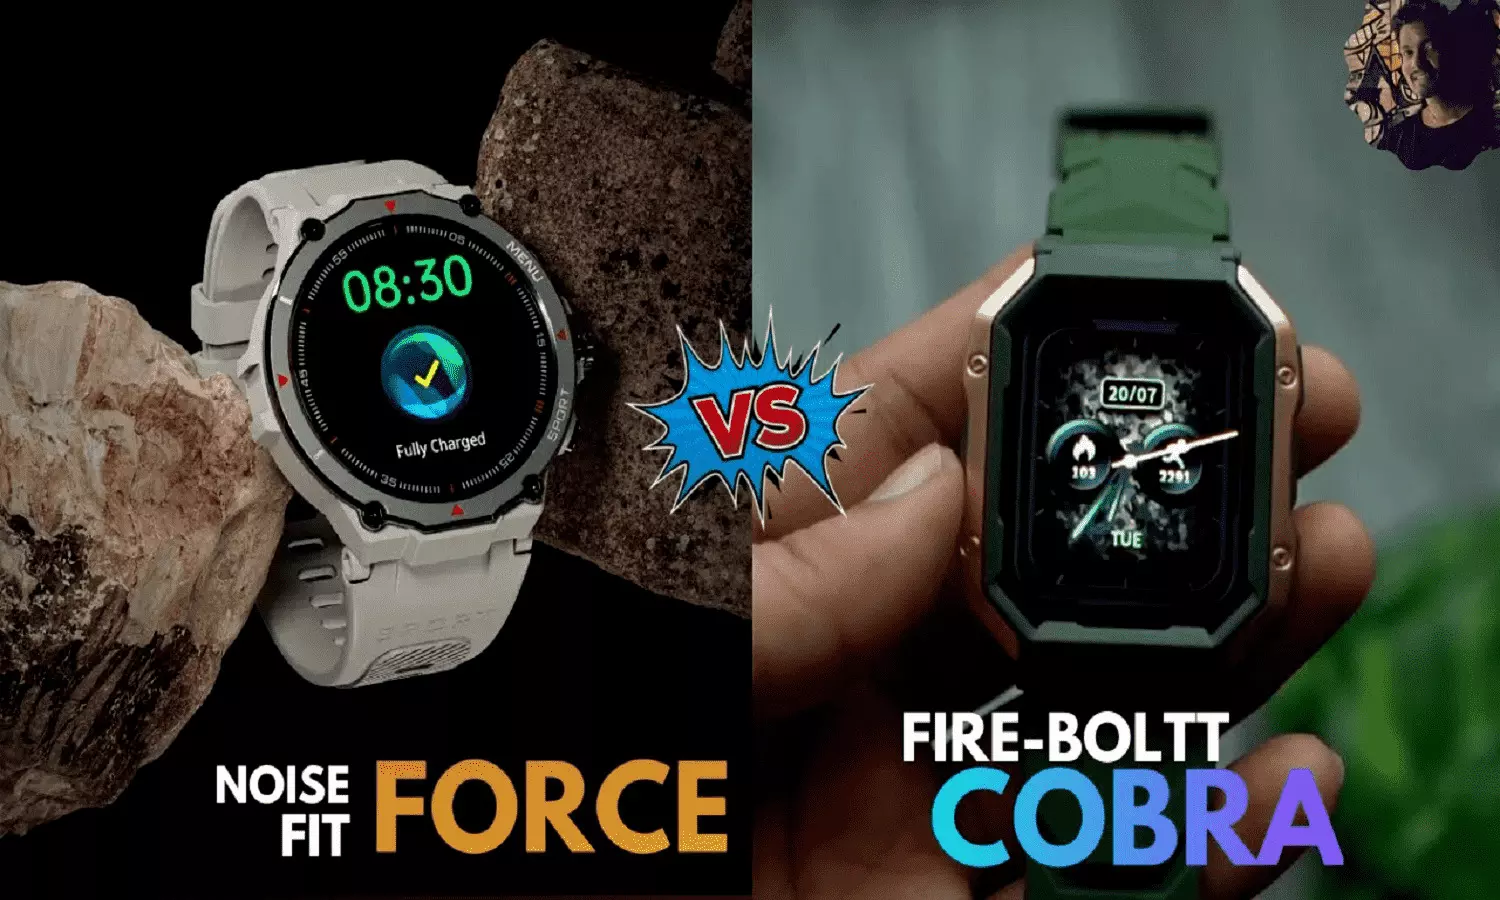 NoiseFit Force VS Fire-Boltt Cobra